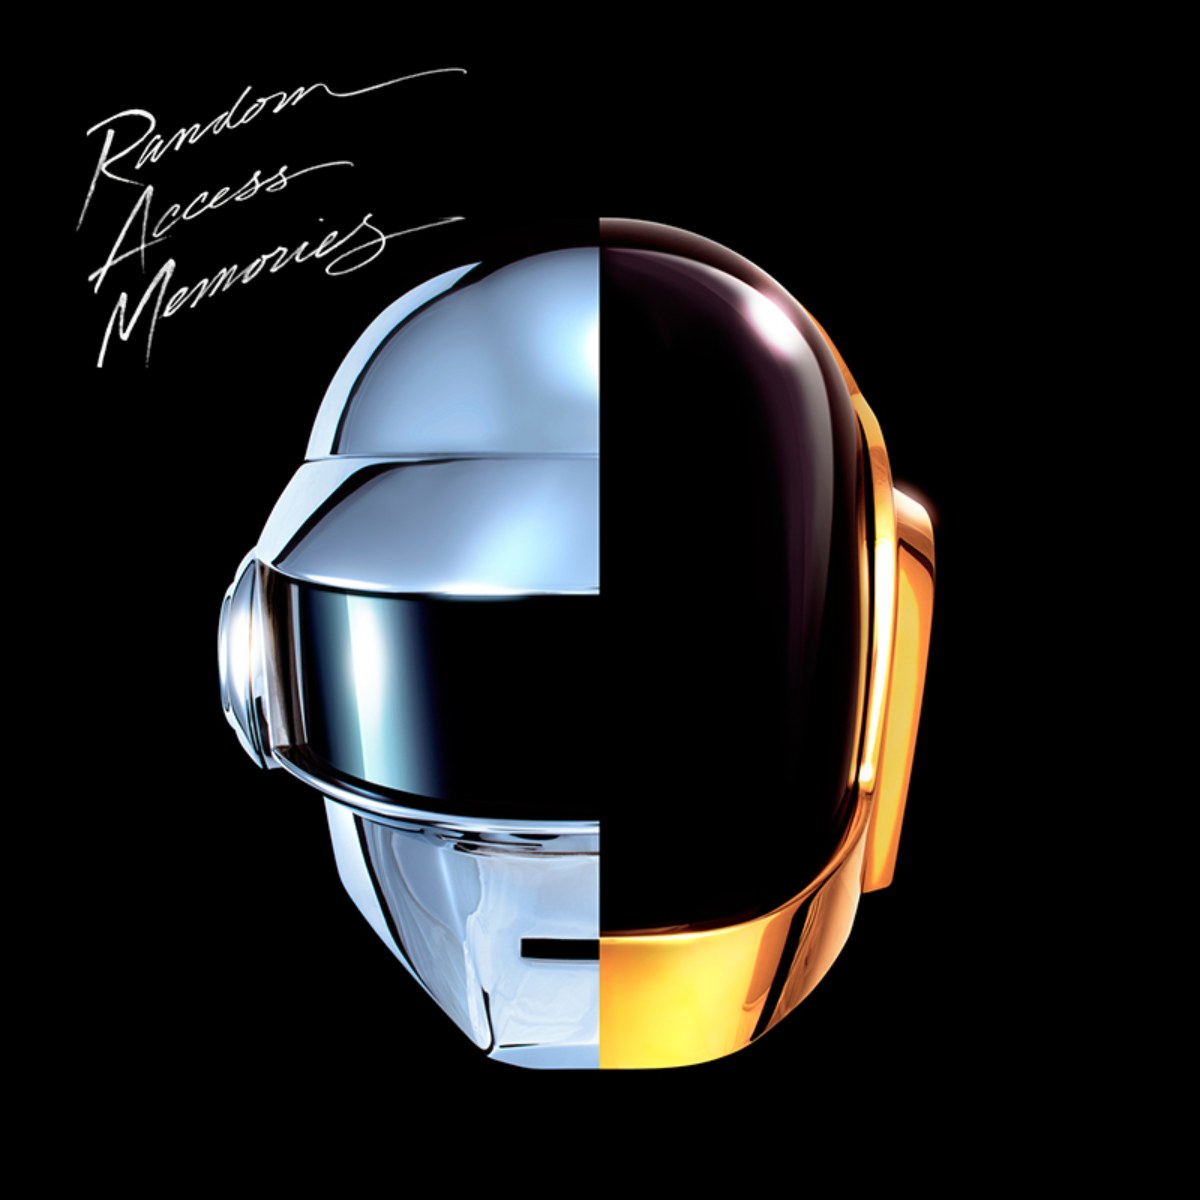 Daft Punk, couverture de l'album Random Access